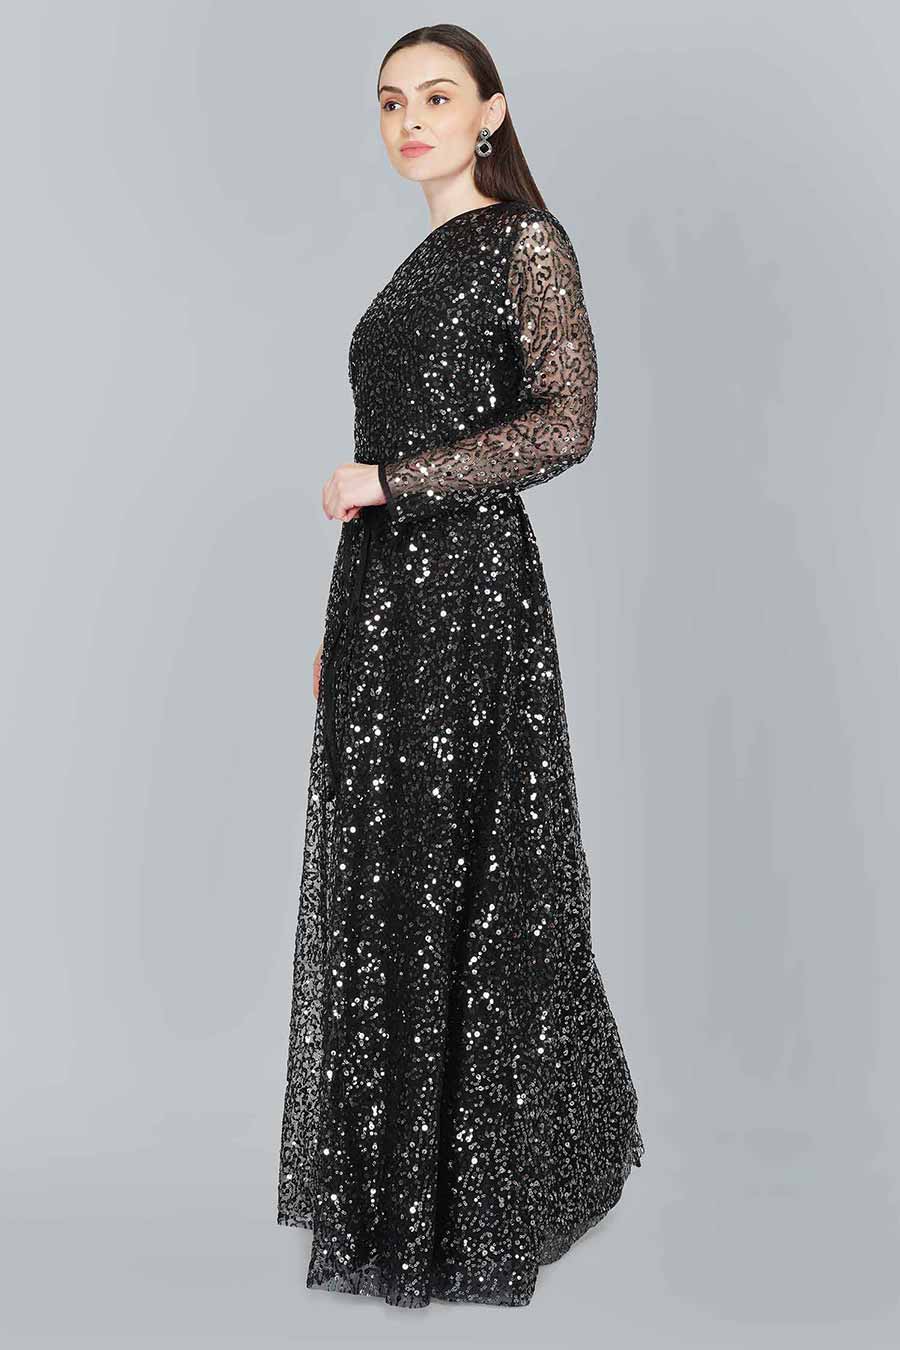 Off Shoulder Black Embellished Gown Dress